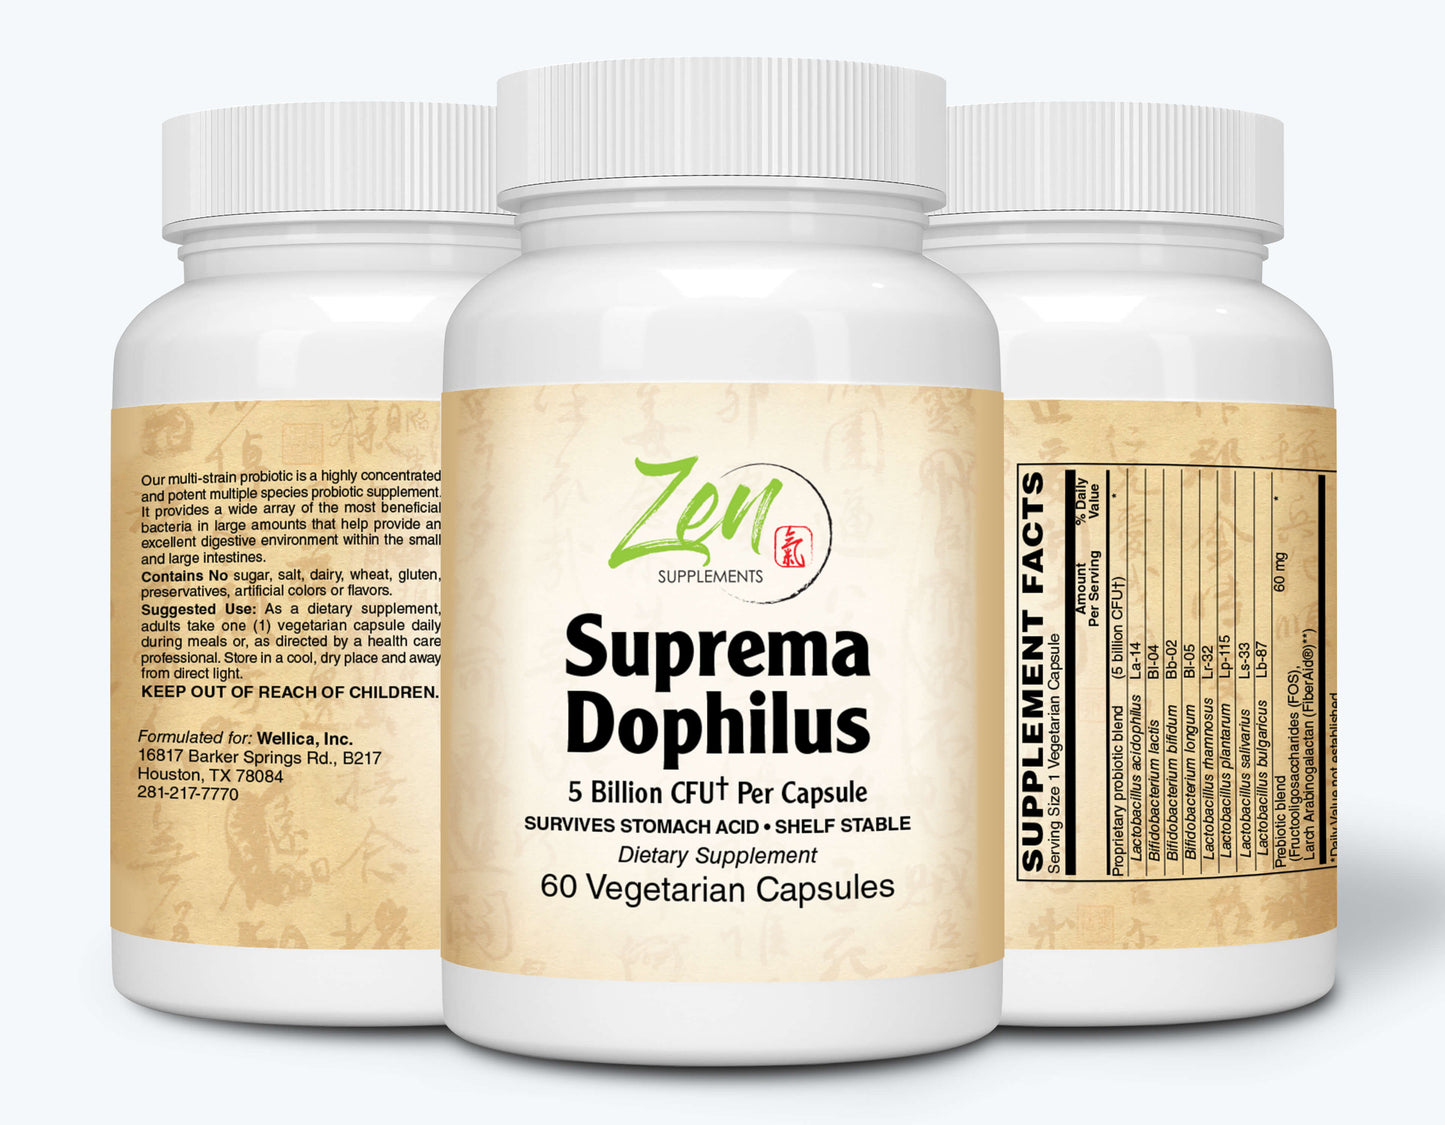 Suprema-Dophilus 5 Billion CFU 8 Strain Probiotic - 60 Caps